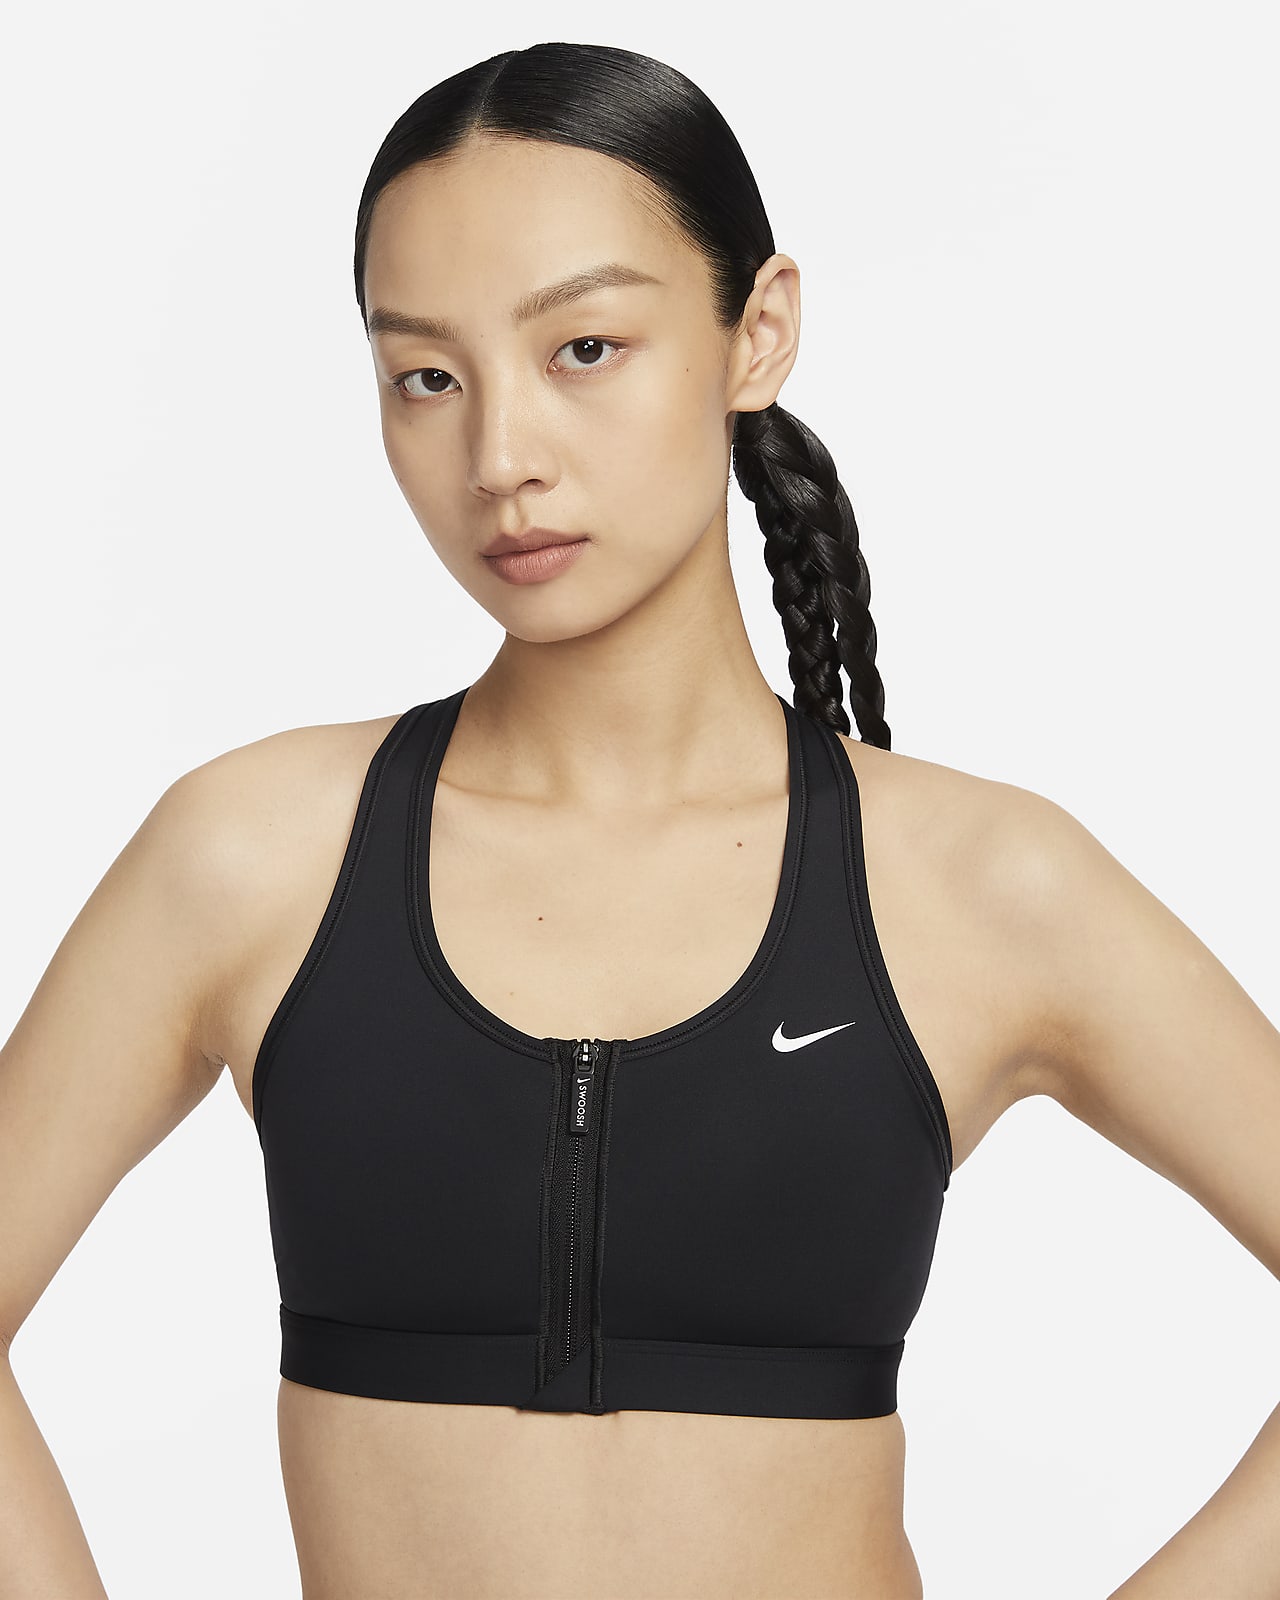 สปอร์ตบราผู้หญิงซัพพอร์ตระดับกลางเสริมฟองน้ำ Nike Swoosh Front Zip